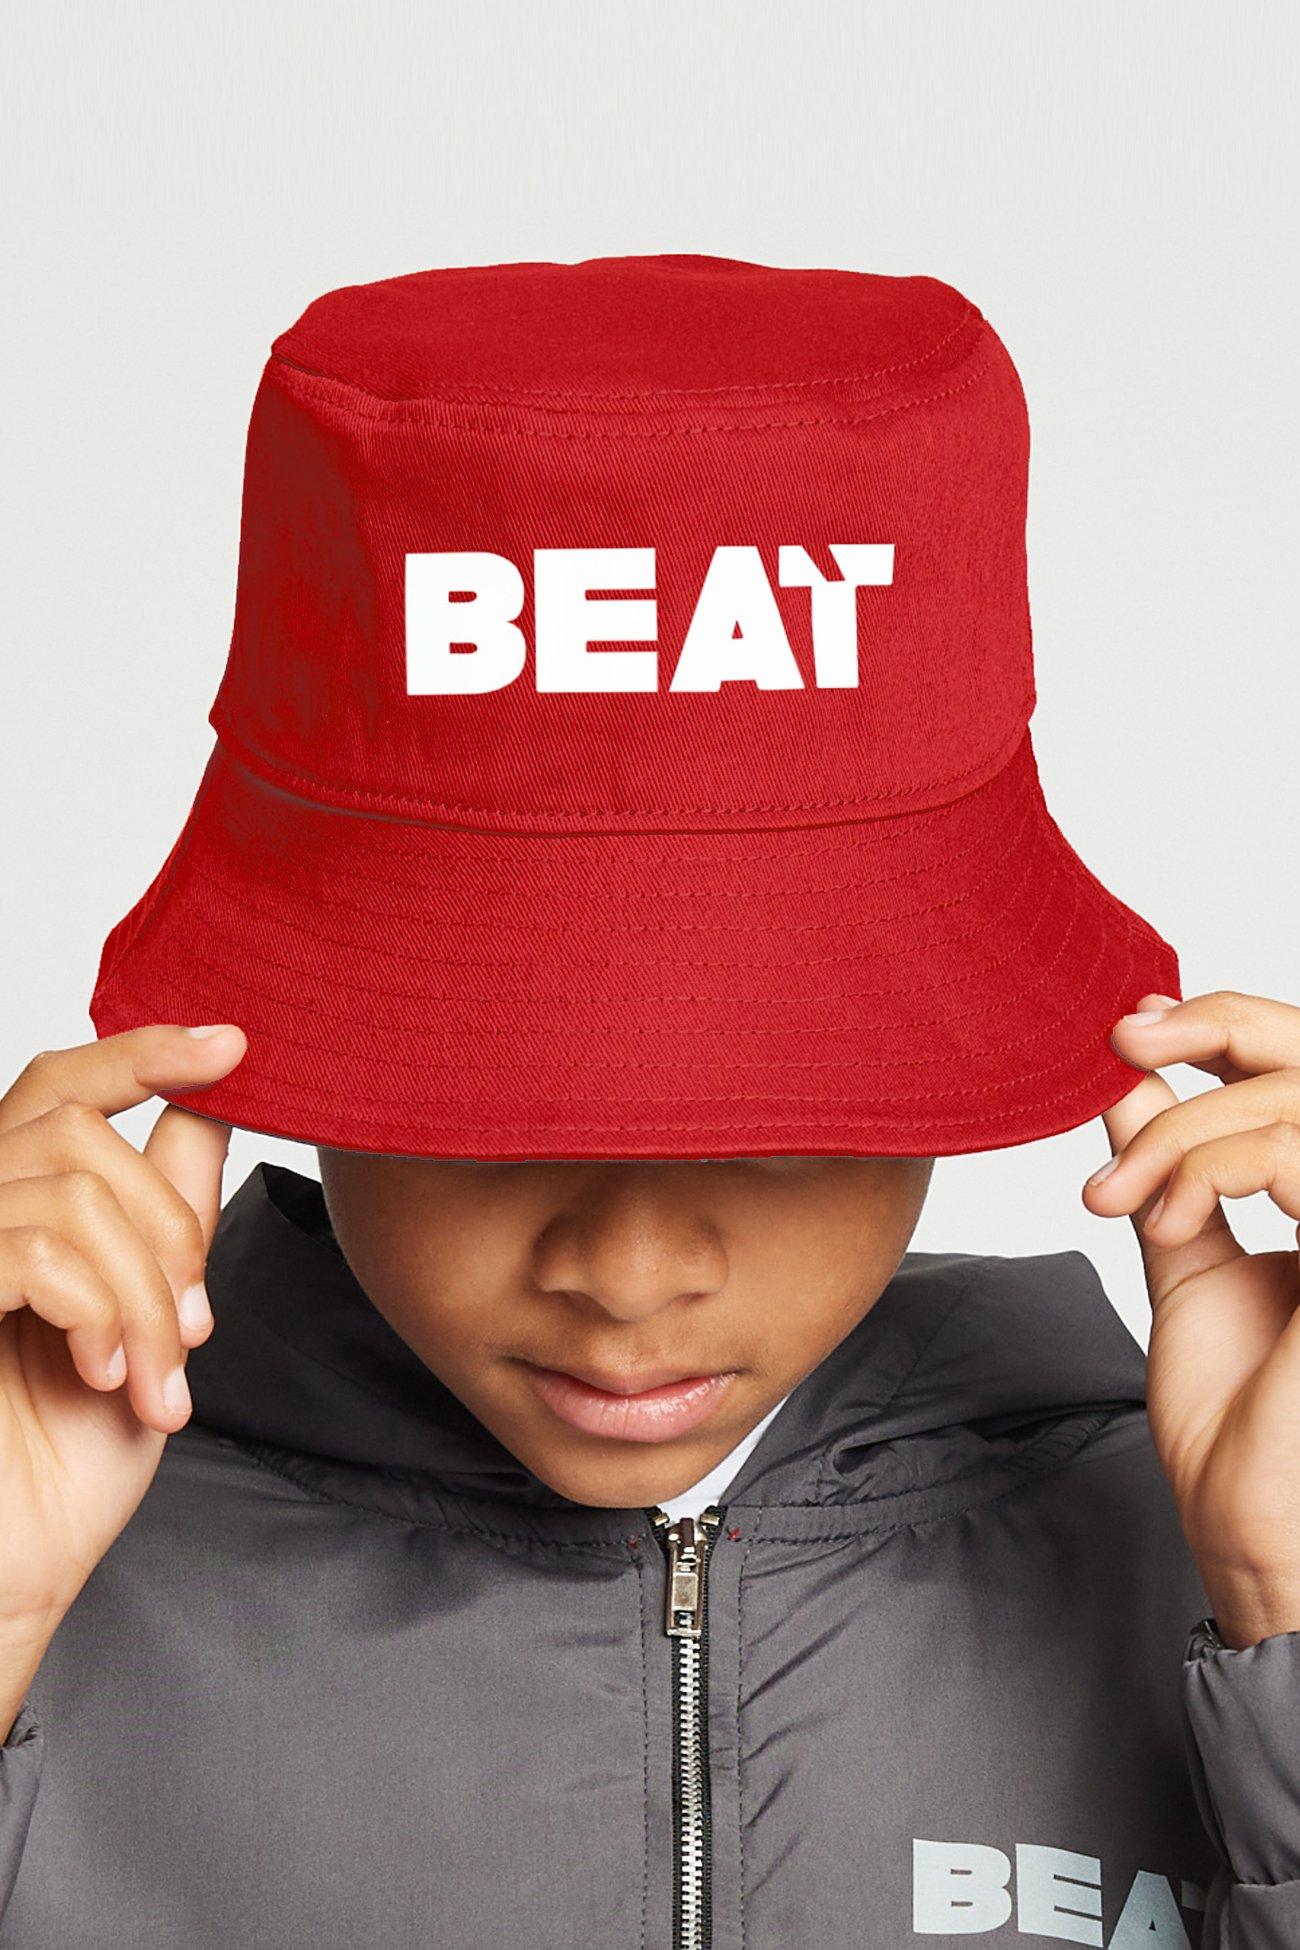 Панама 'Beat' Beat Boyz Club, красный жилет с камуфляжной вставкой wheelnut beat boyz club хаки